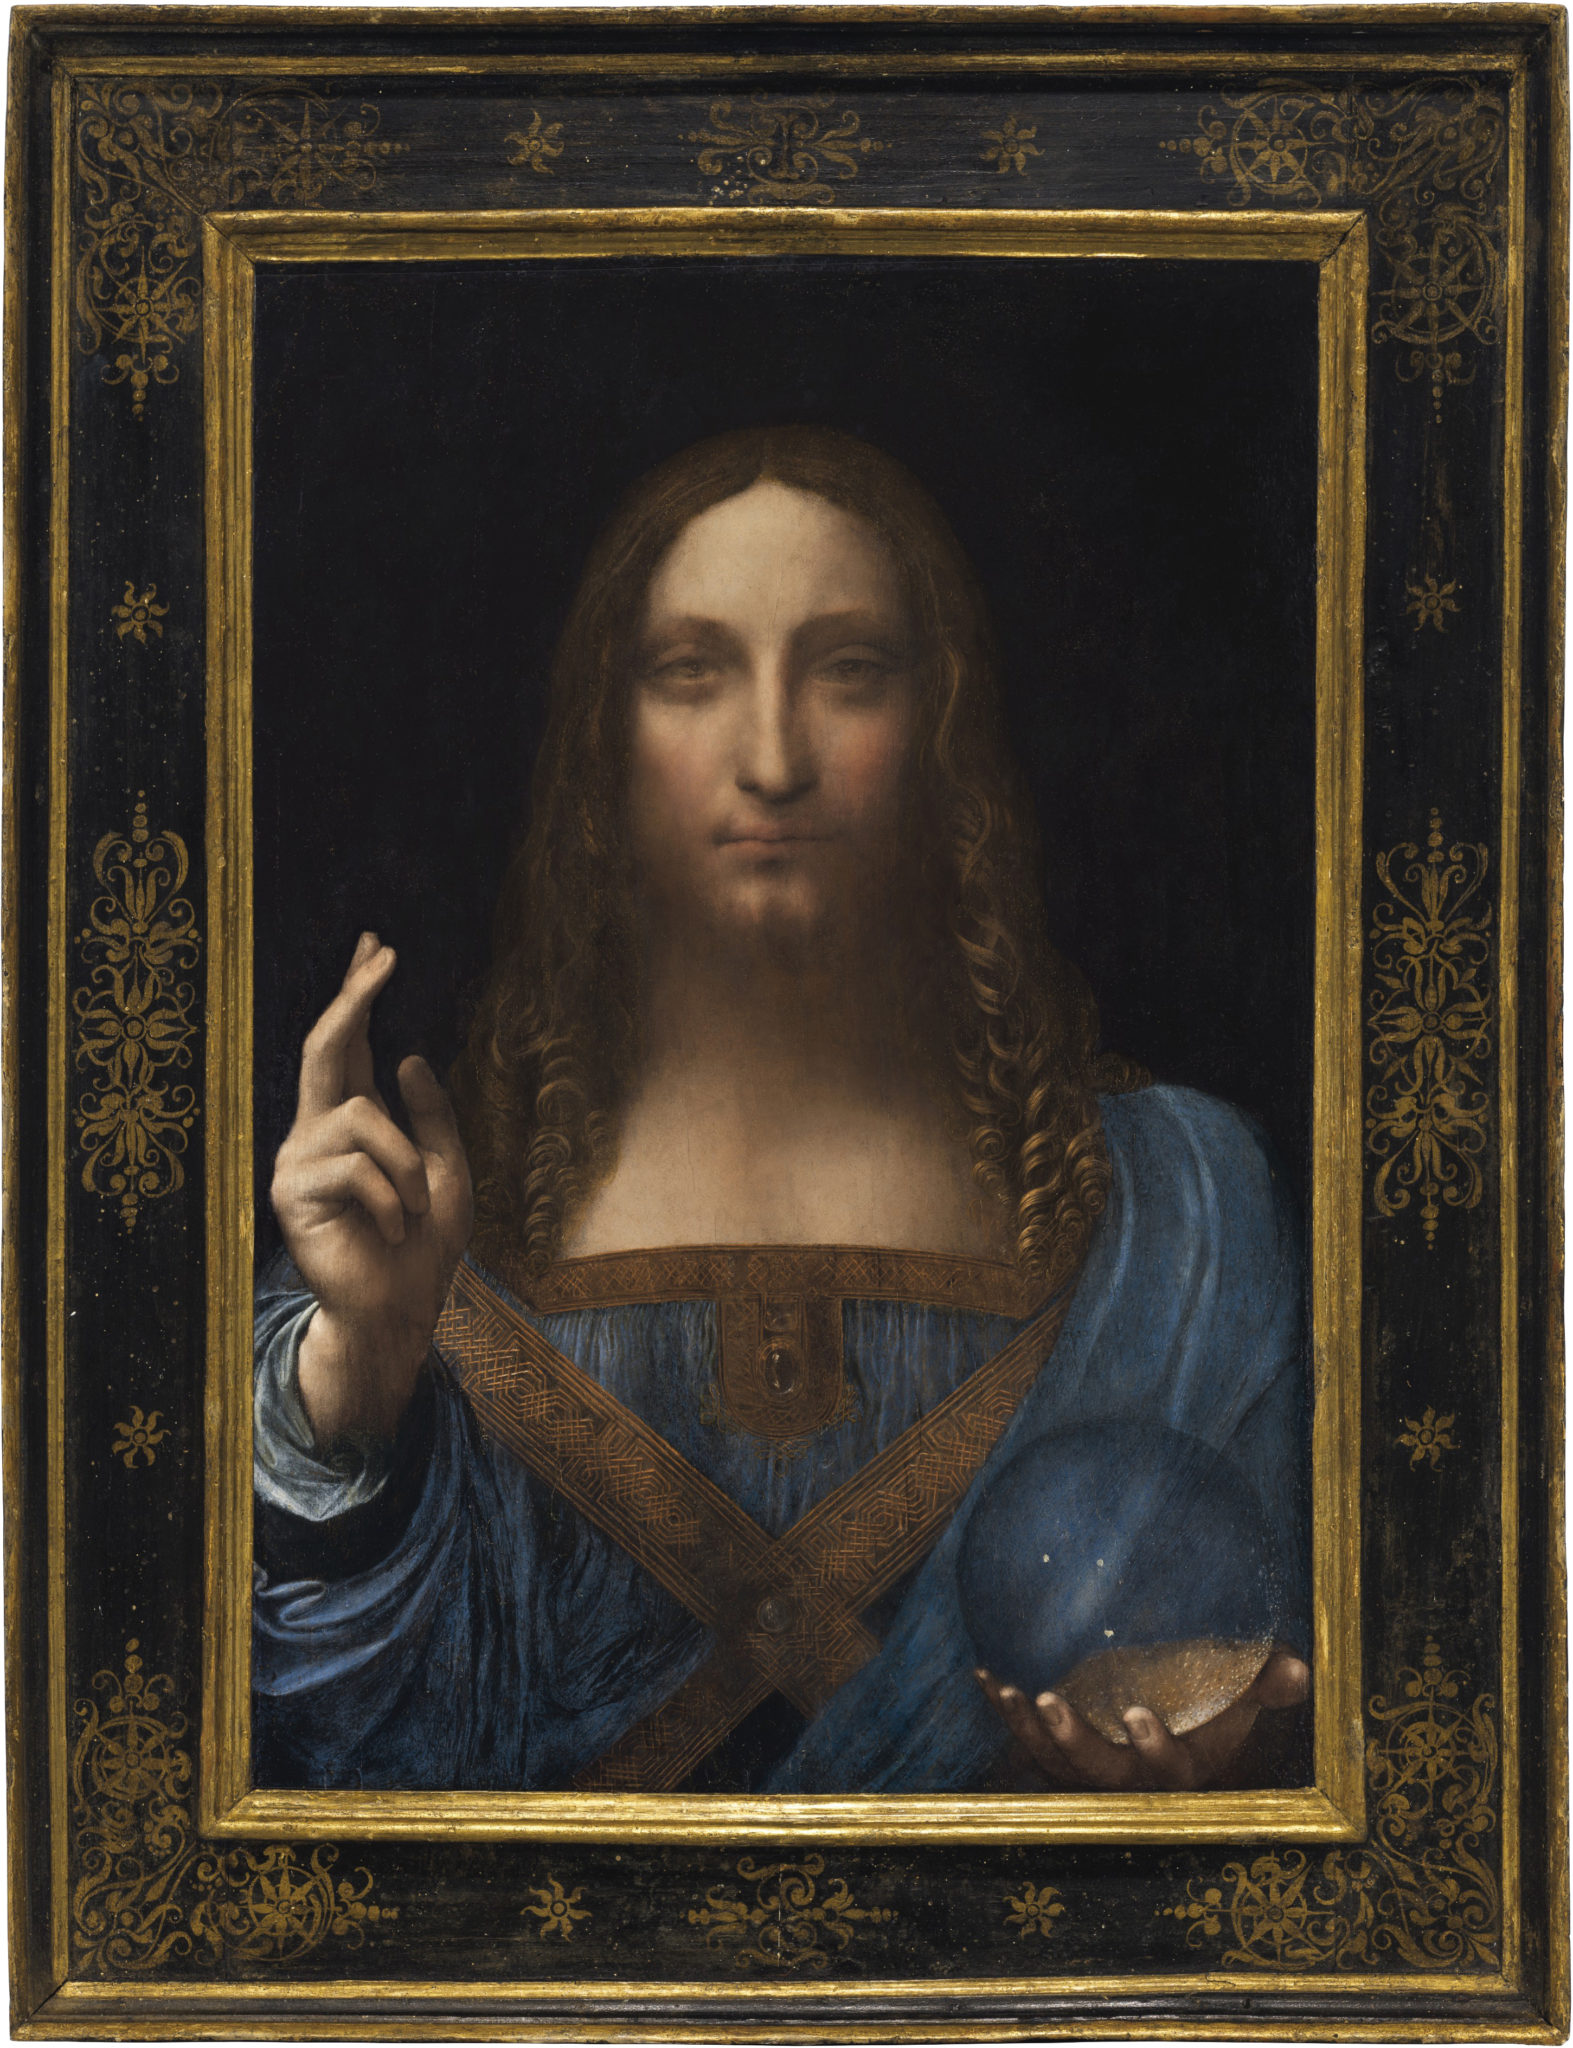 Tüm zamanların en pahalı tablosu olan Leonardo Da Vinci'nin Salvator Mundi'si - tefecilik amacıyla güzel sanatlara değer biçme ve değer biçme üzerine bir tasvir